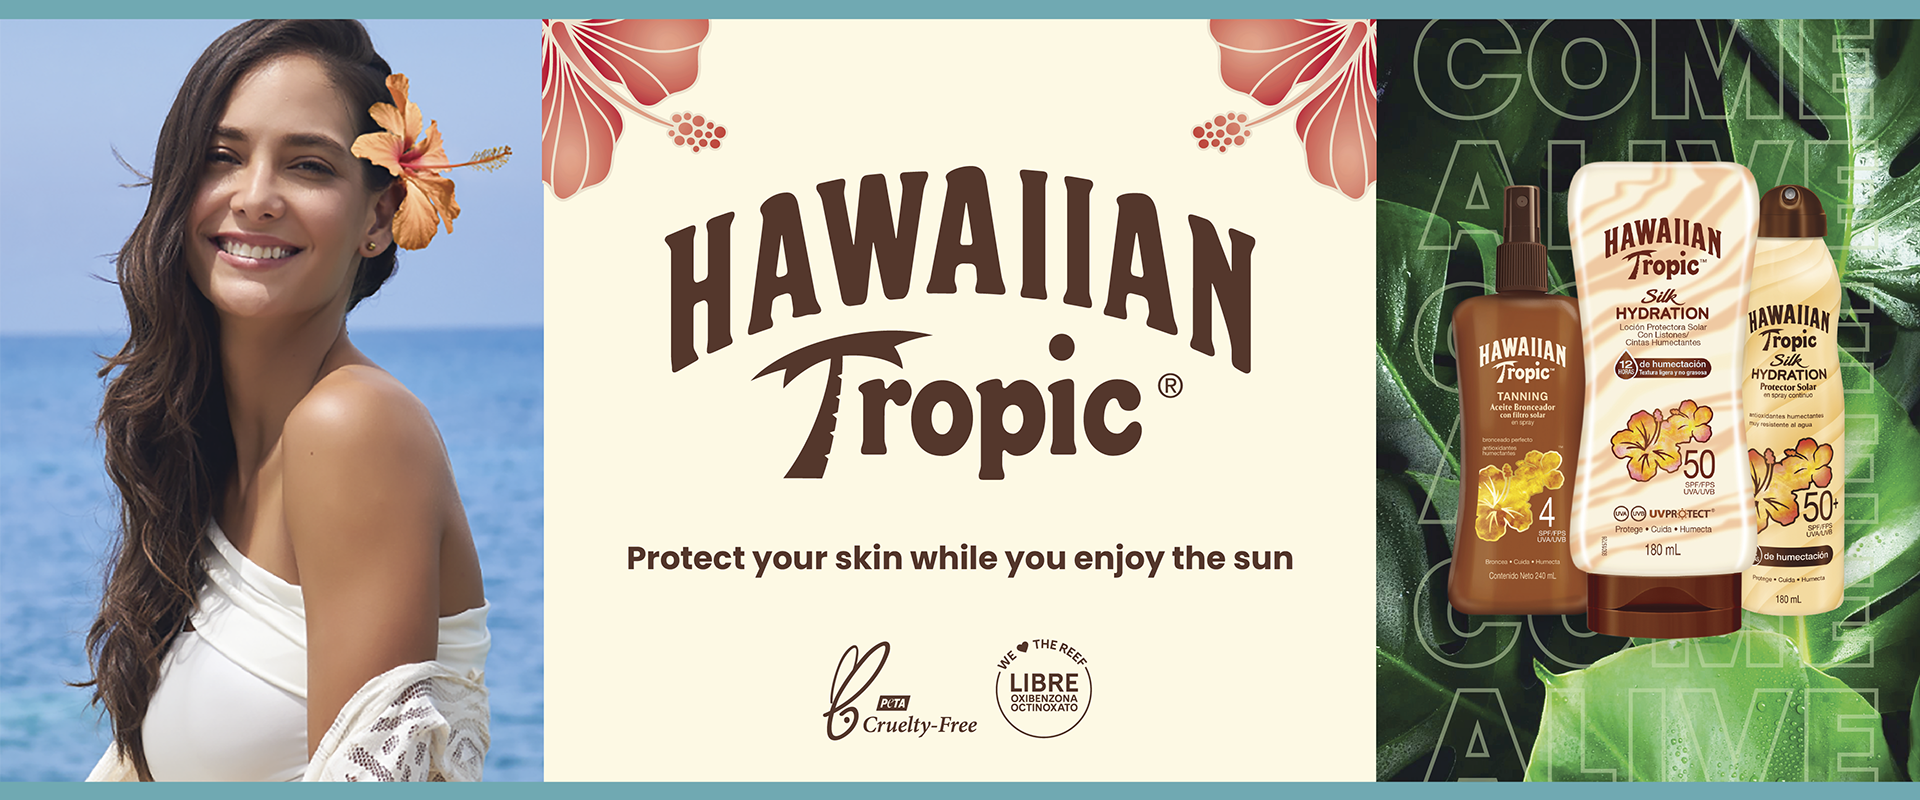 Hawaiian%20Tropic